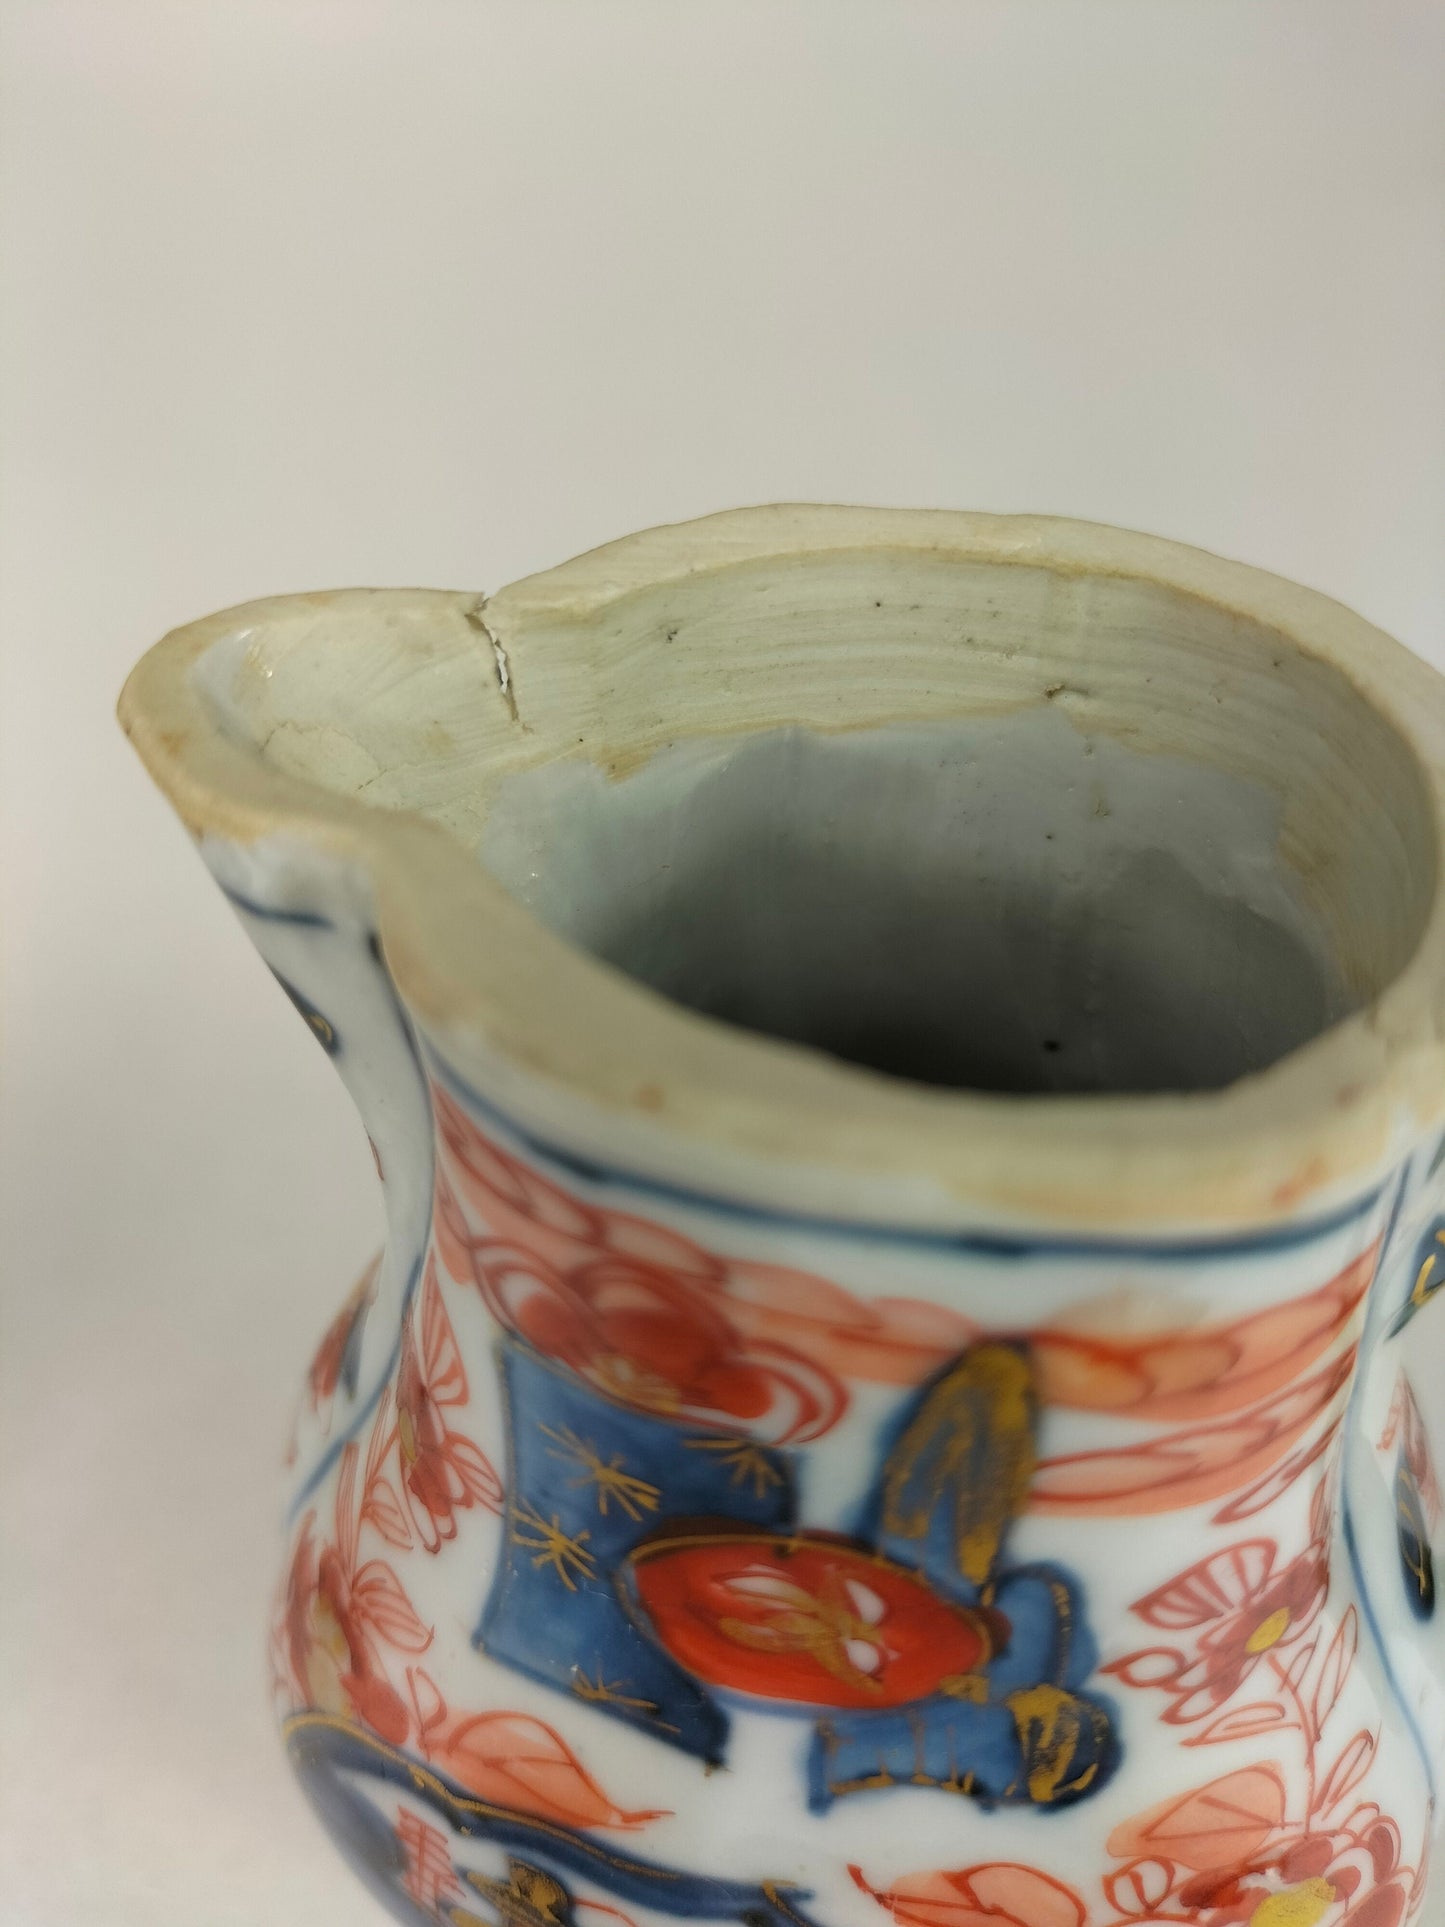 Ancienne boîte à thé chinoise imari décorée de motifs floraux // Dynastie Qing - 18e siècle - Kangxi